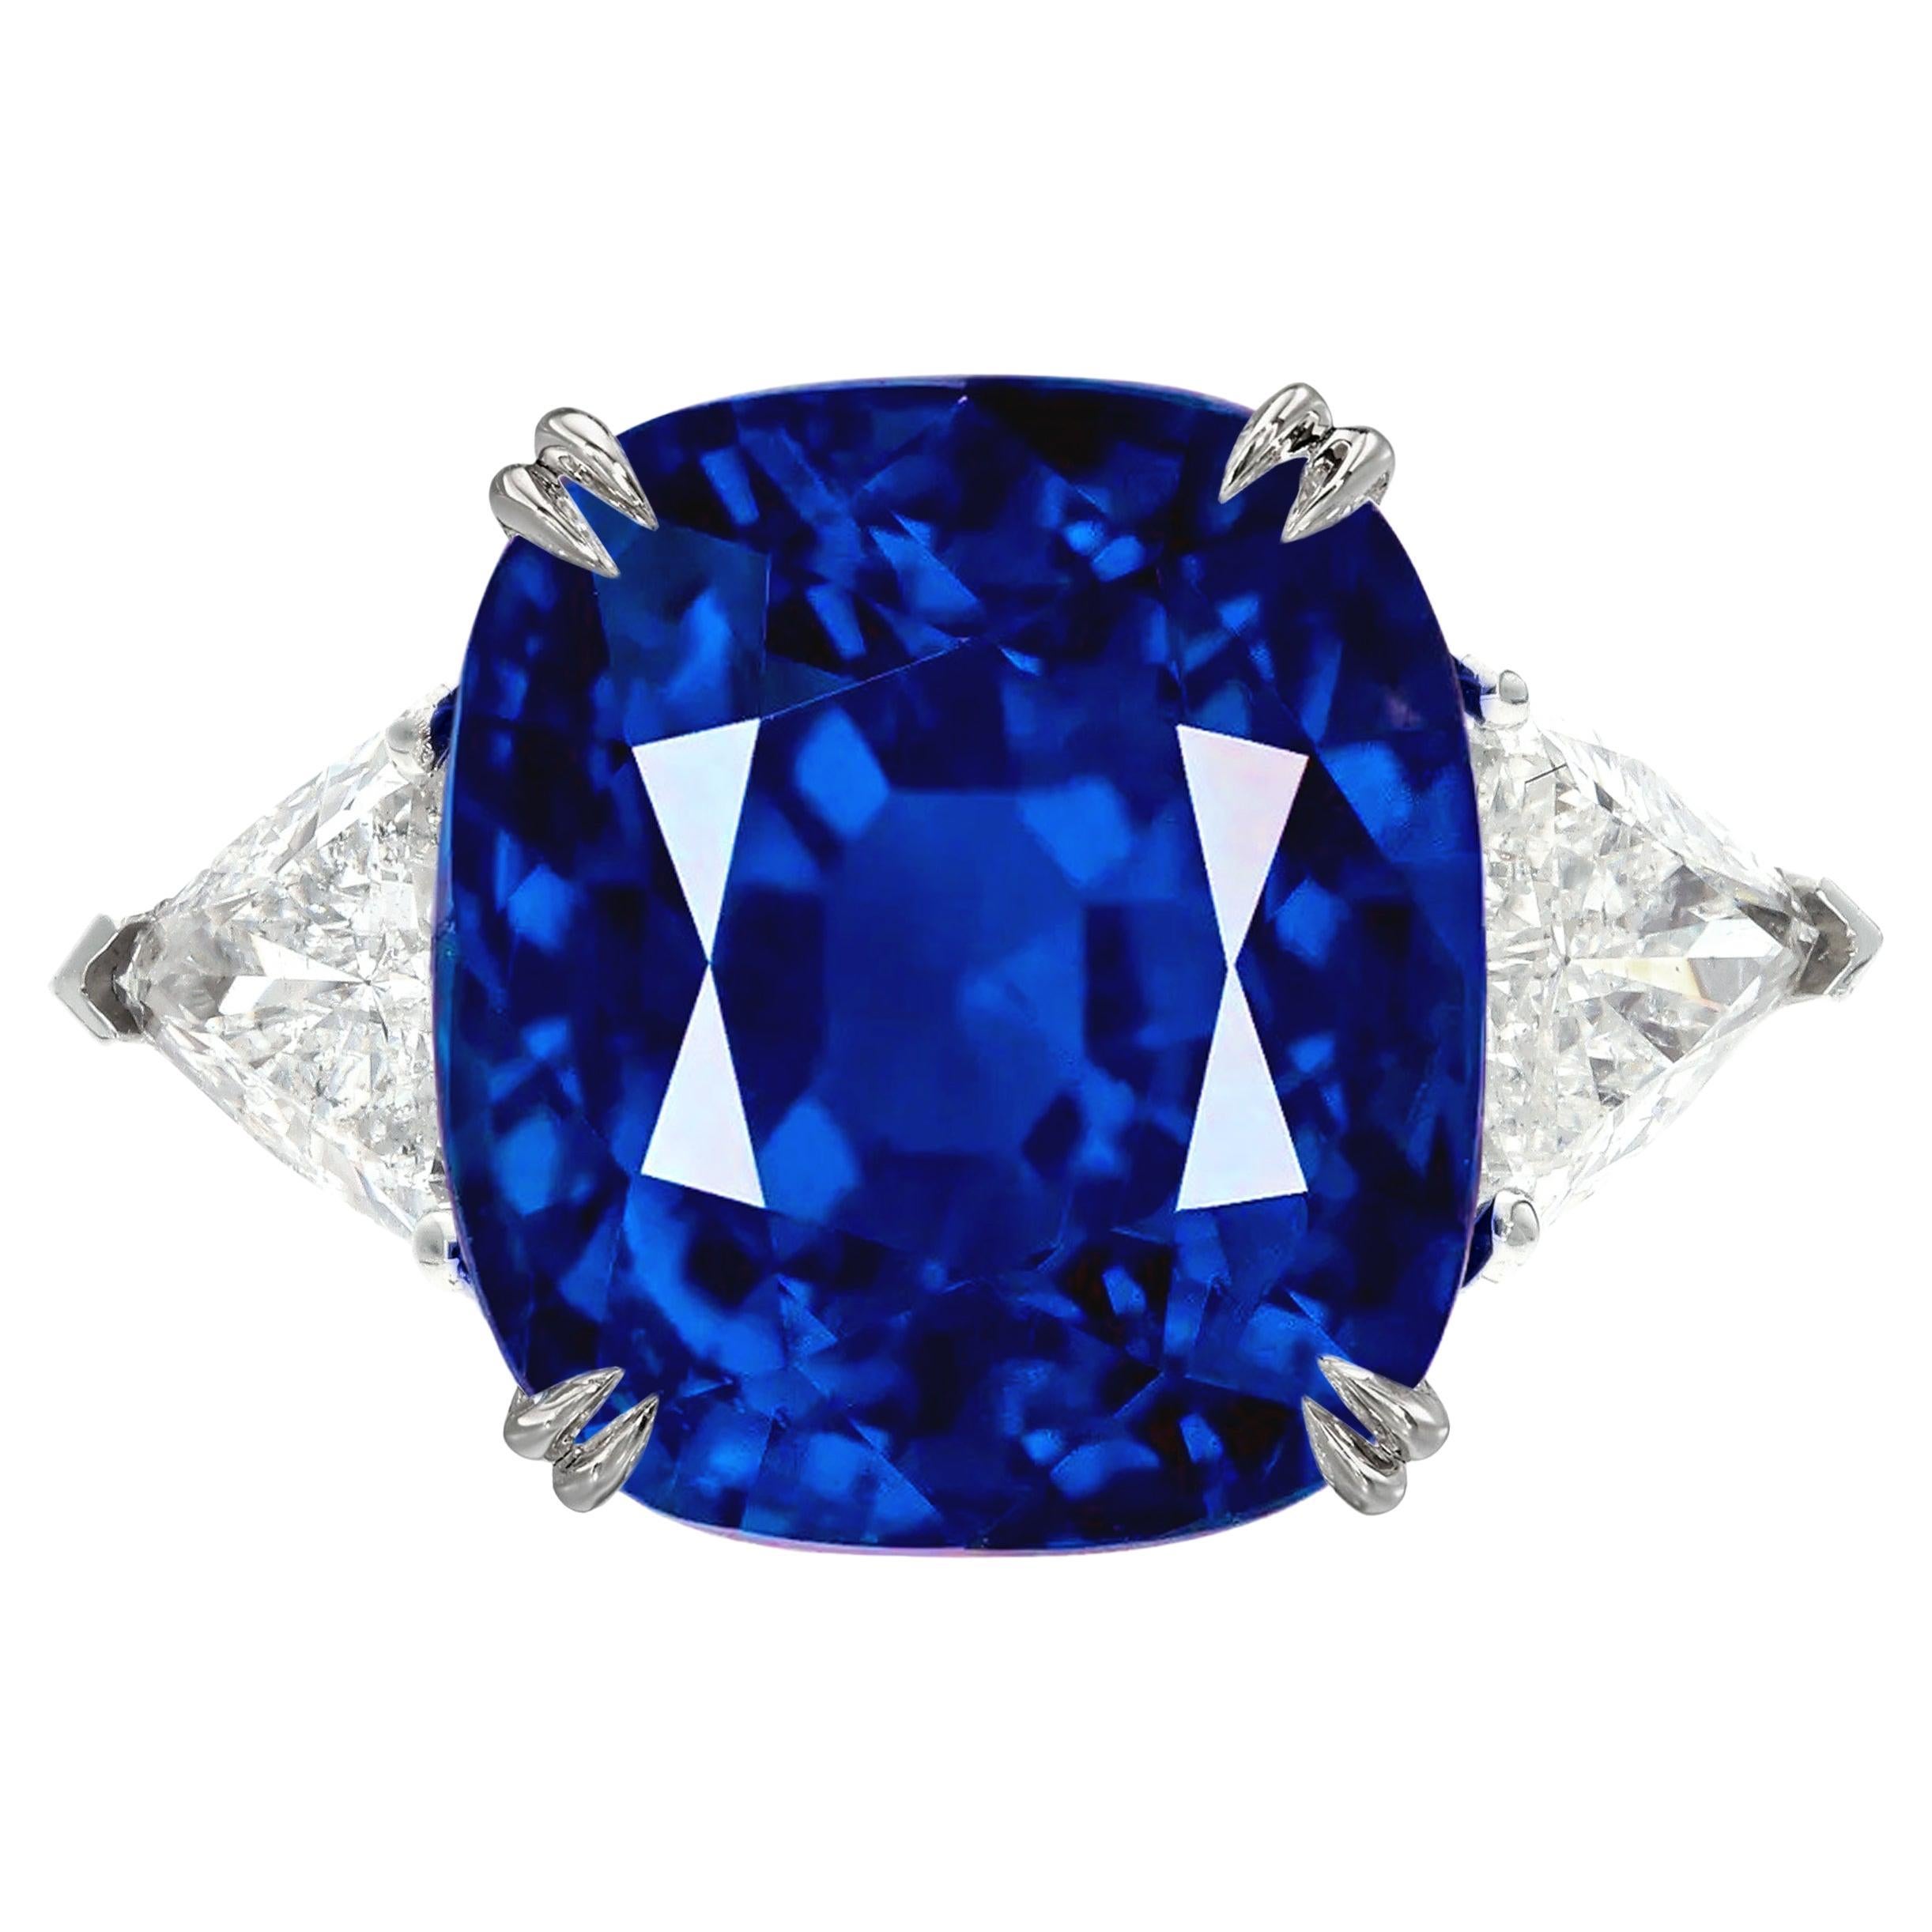 Exceptionnelle bague en saphir bleu de Birmanie certifié GRS de 9 carats et diamant d'origine